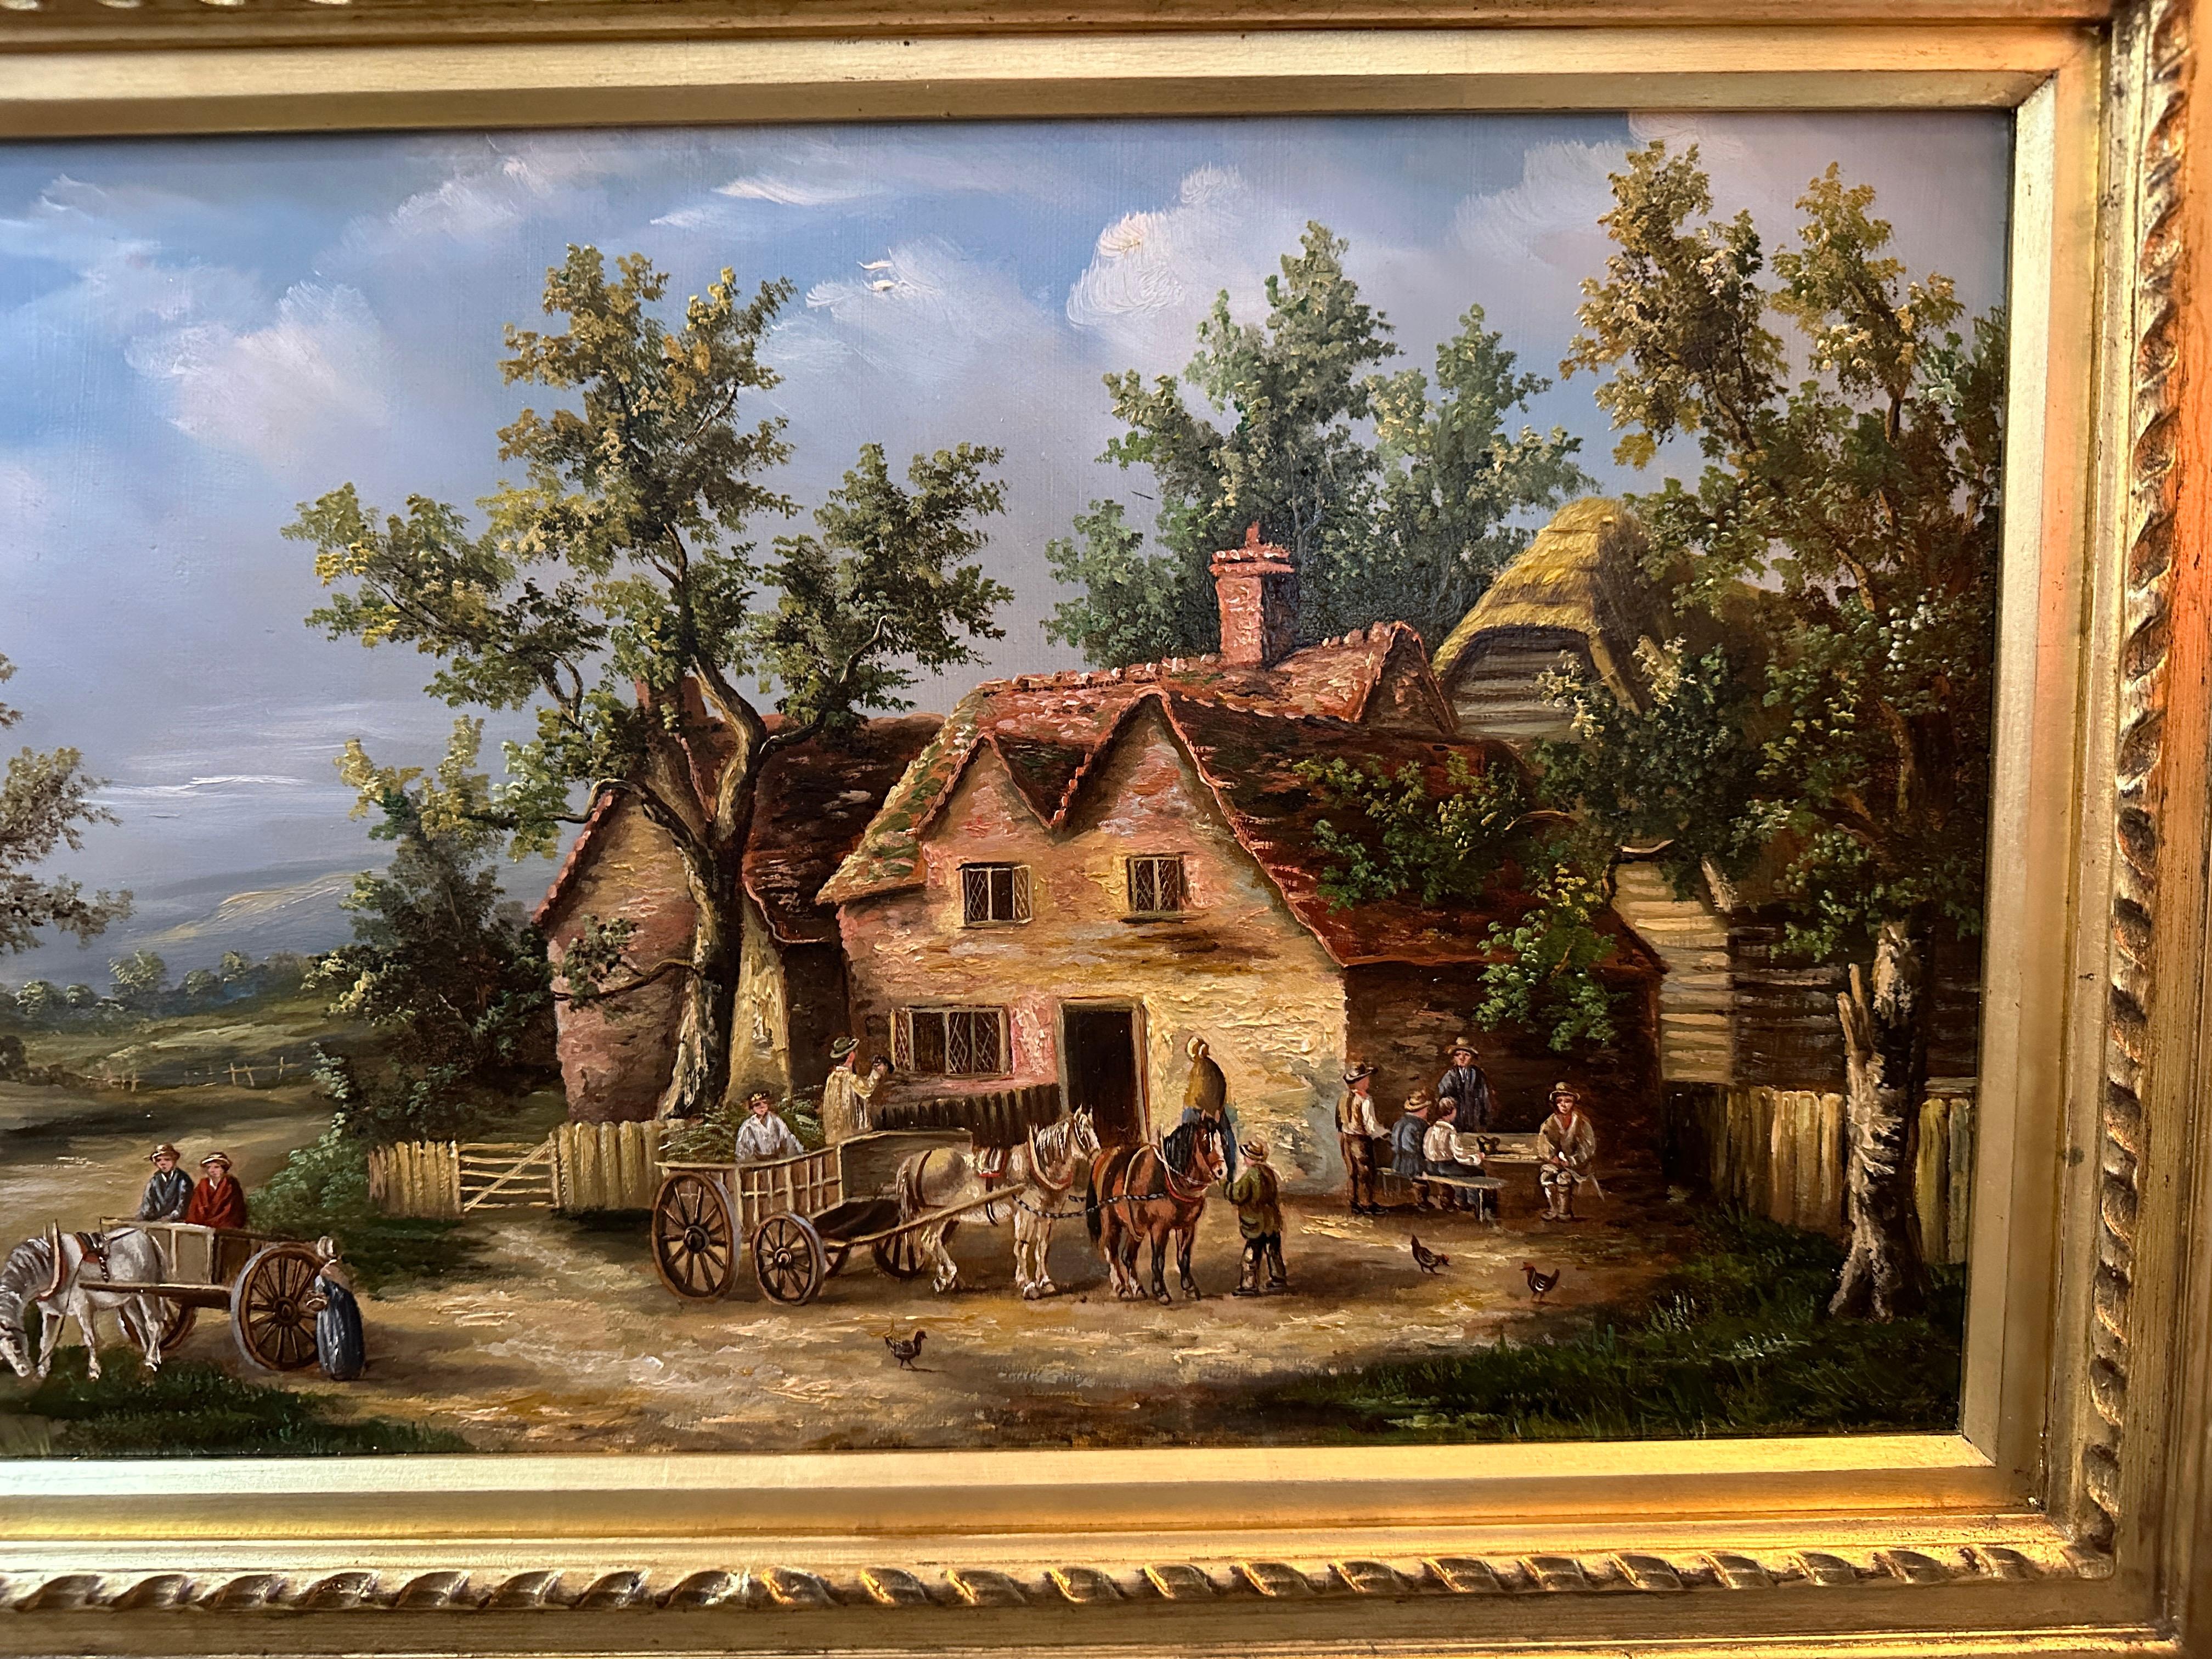 Englische Dorfszene aus dem 19. Jahrhundert mit Häusern, Pferdelandschaft und Menschen – Painting von Georgina Lara